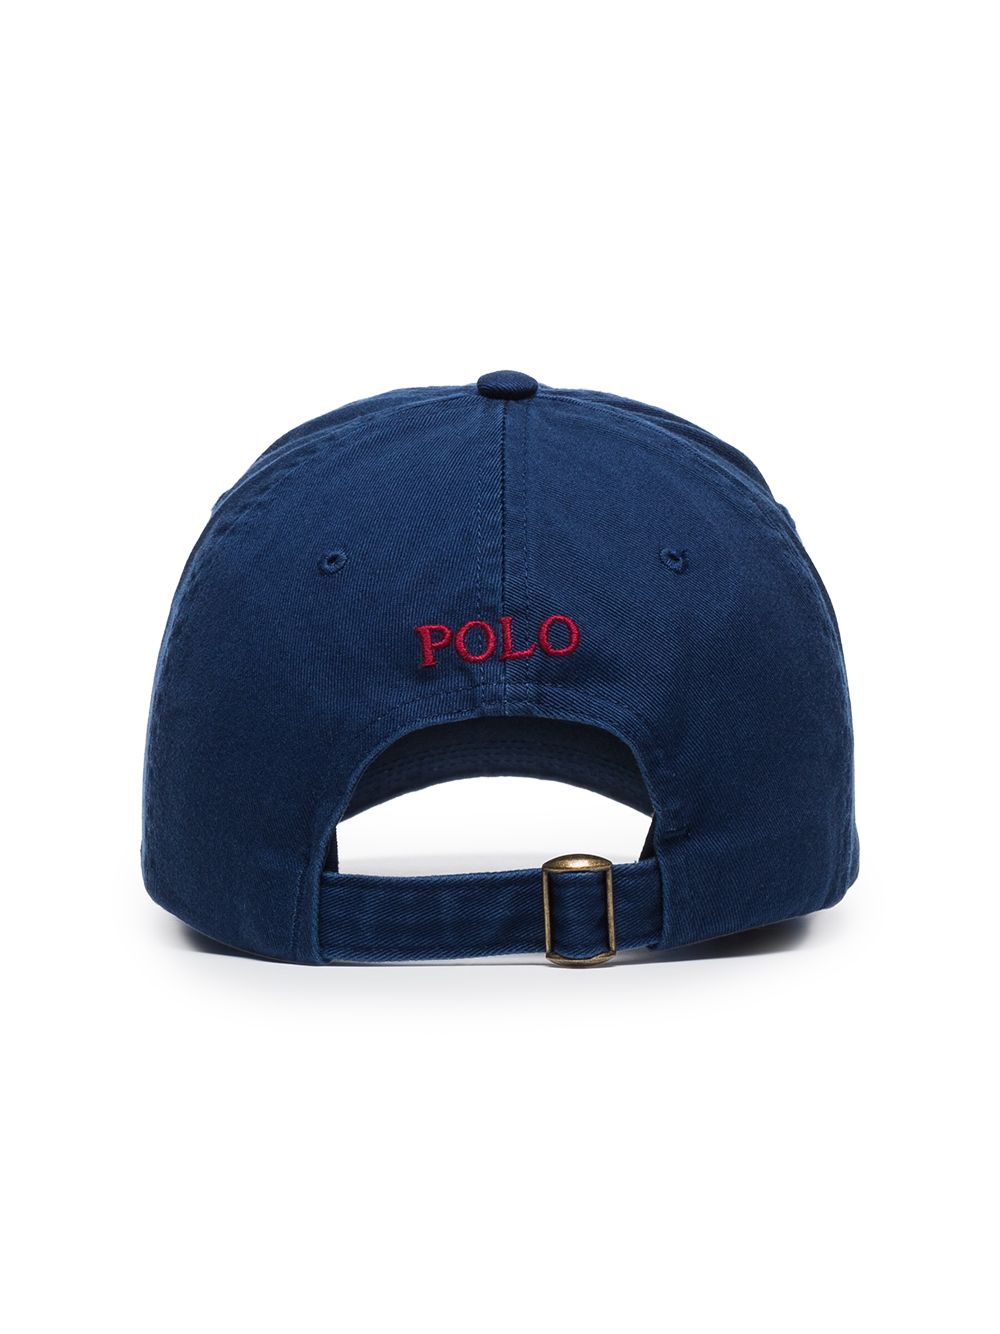 фото Polo ralph lauren кепка classic sport с вышитым логотипом